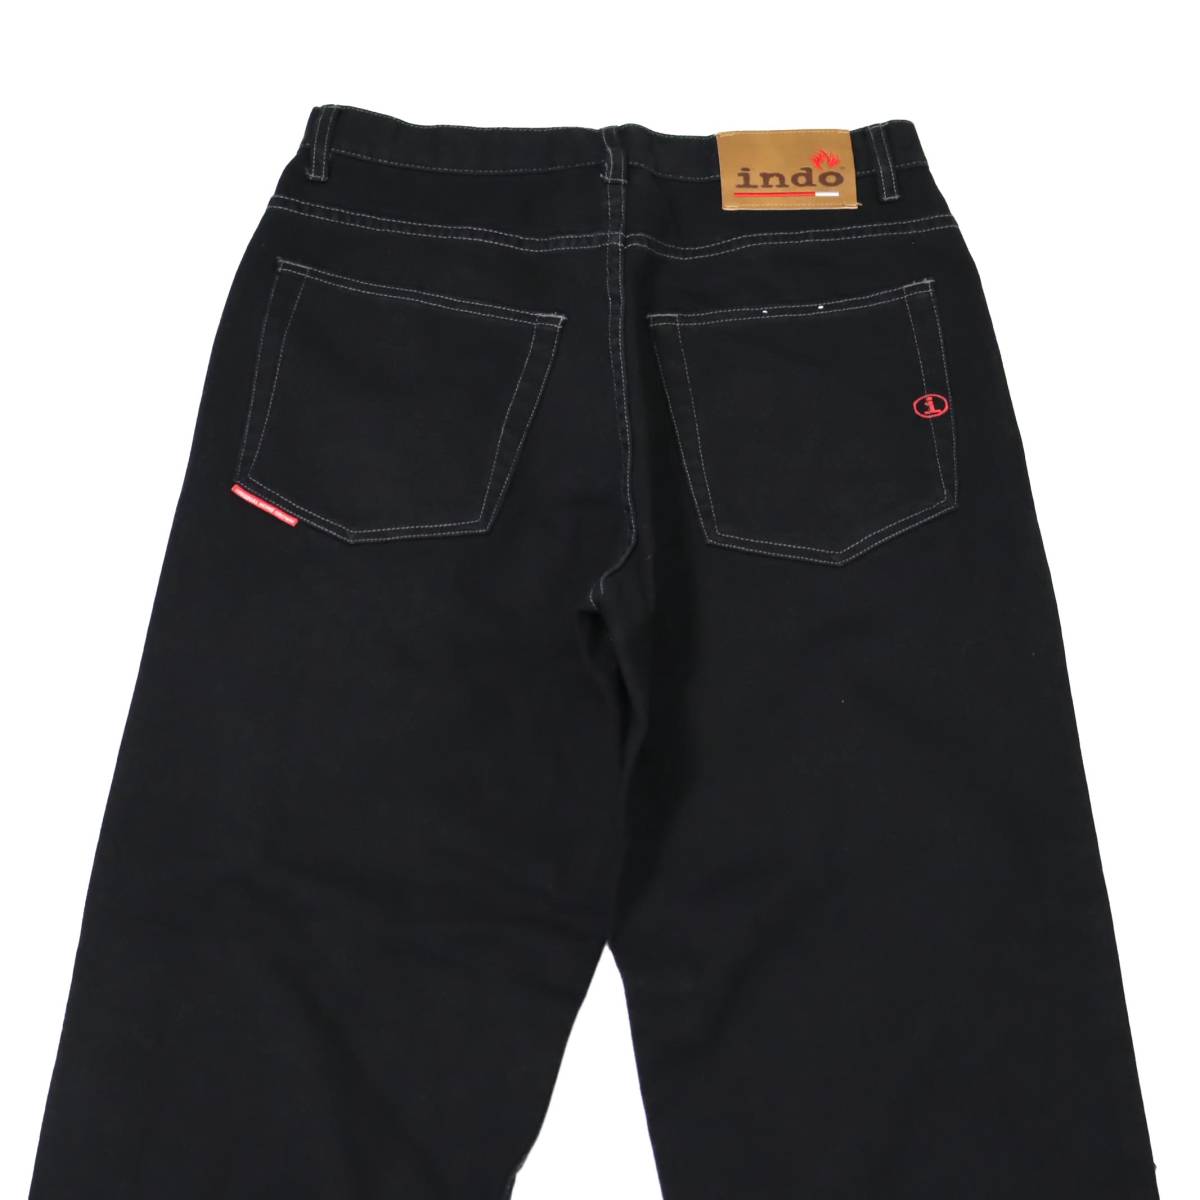 [32R] Y2K Indo Jeans Co ルーズ ストレート デニム パンツ ブラック 黒 インド ジーンズ デザイン ビンテージ vintage 90s 00s_画像6